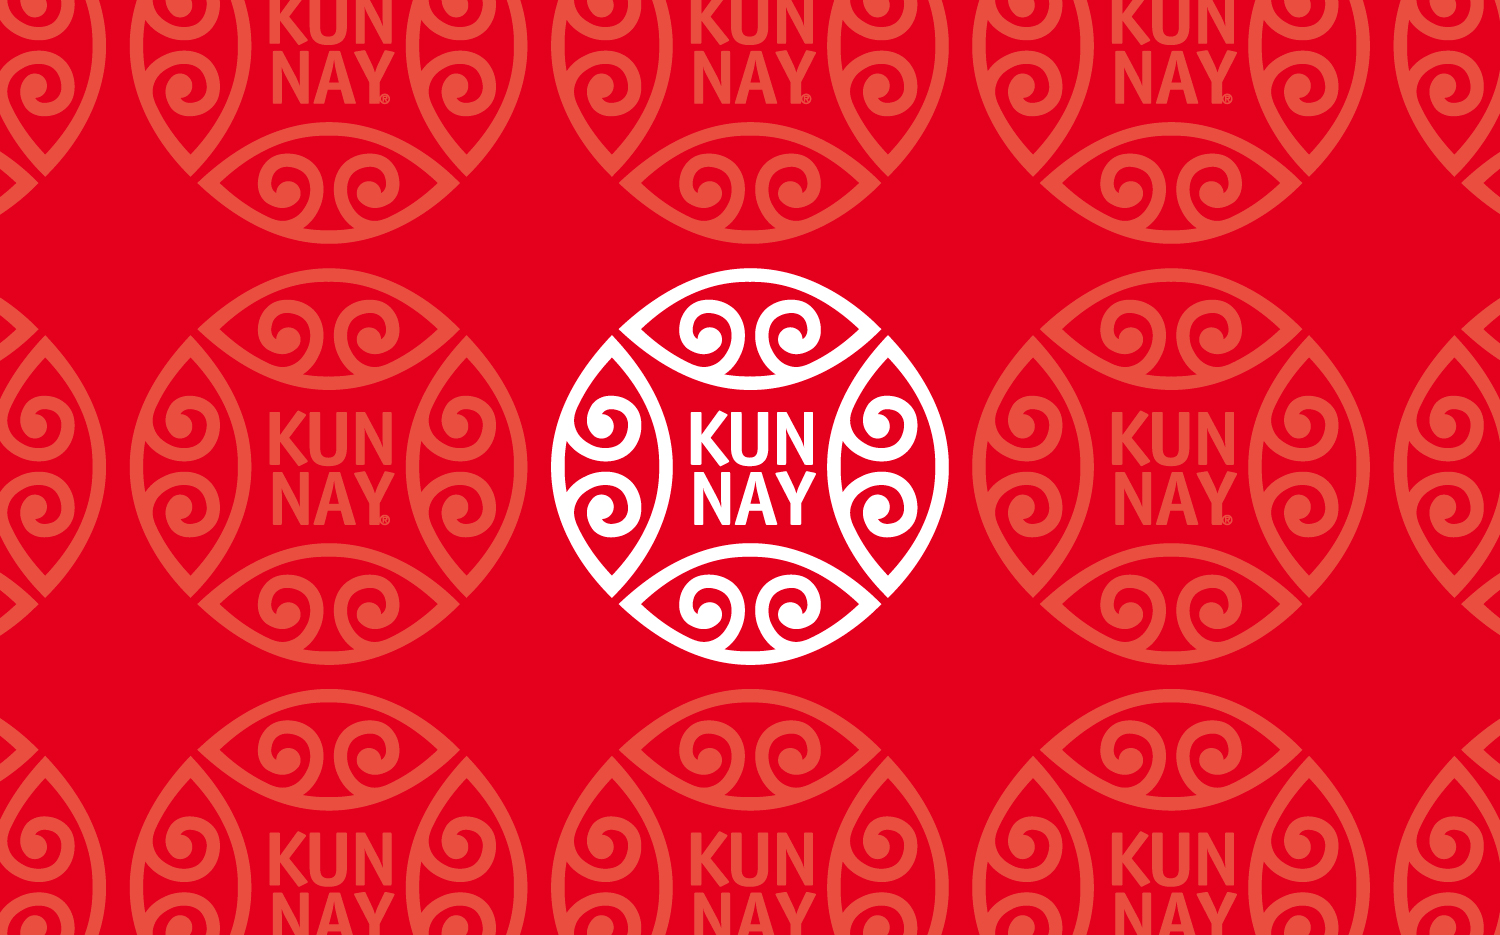 Identidad corporativa de Kunnay